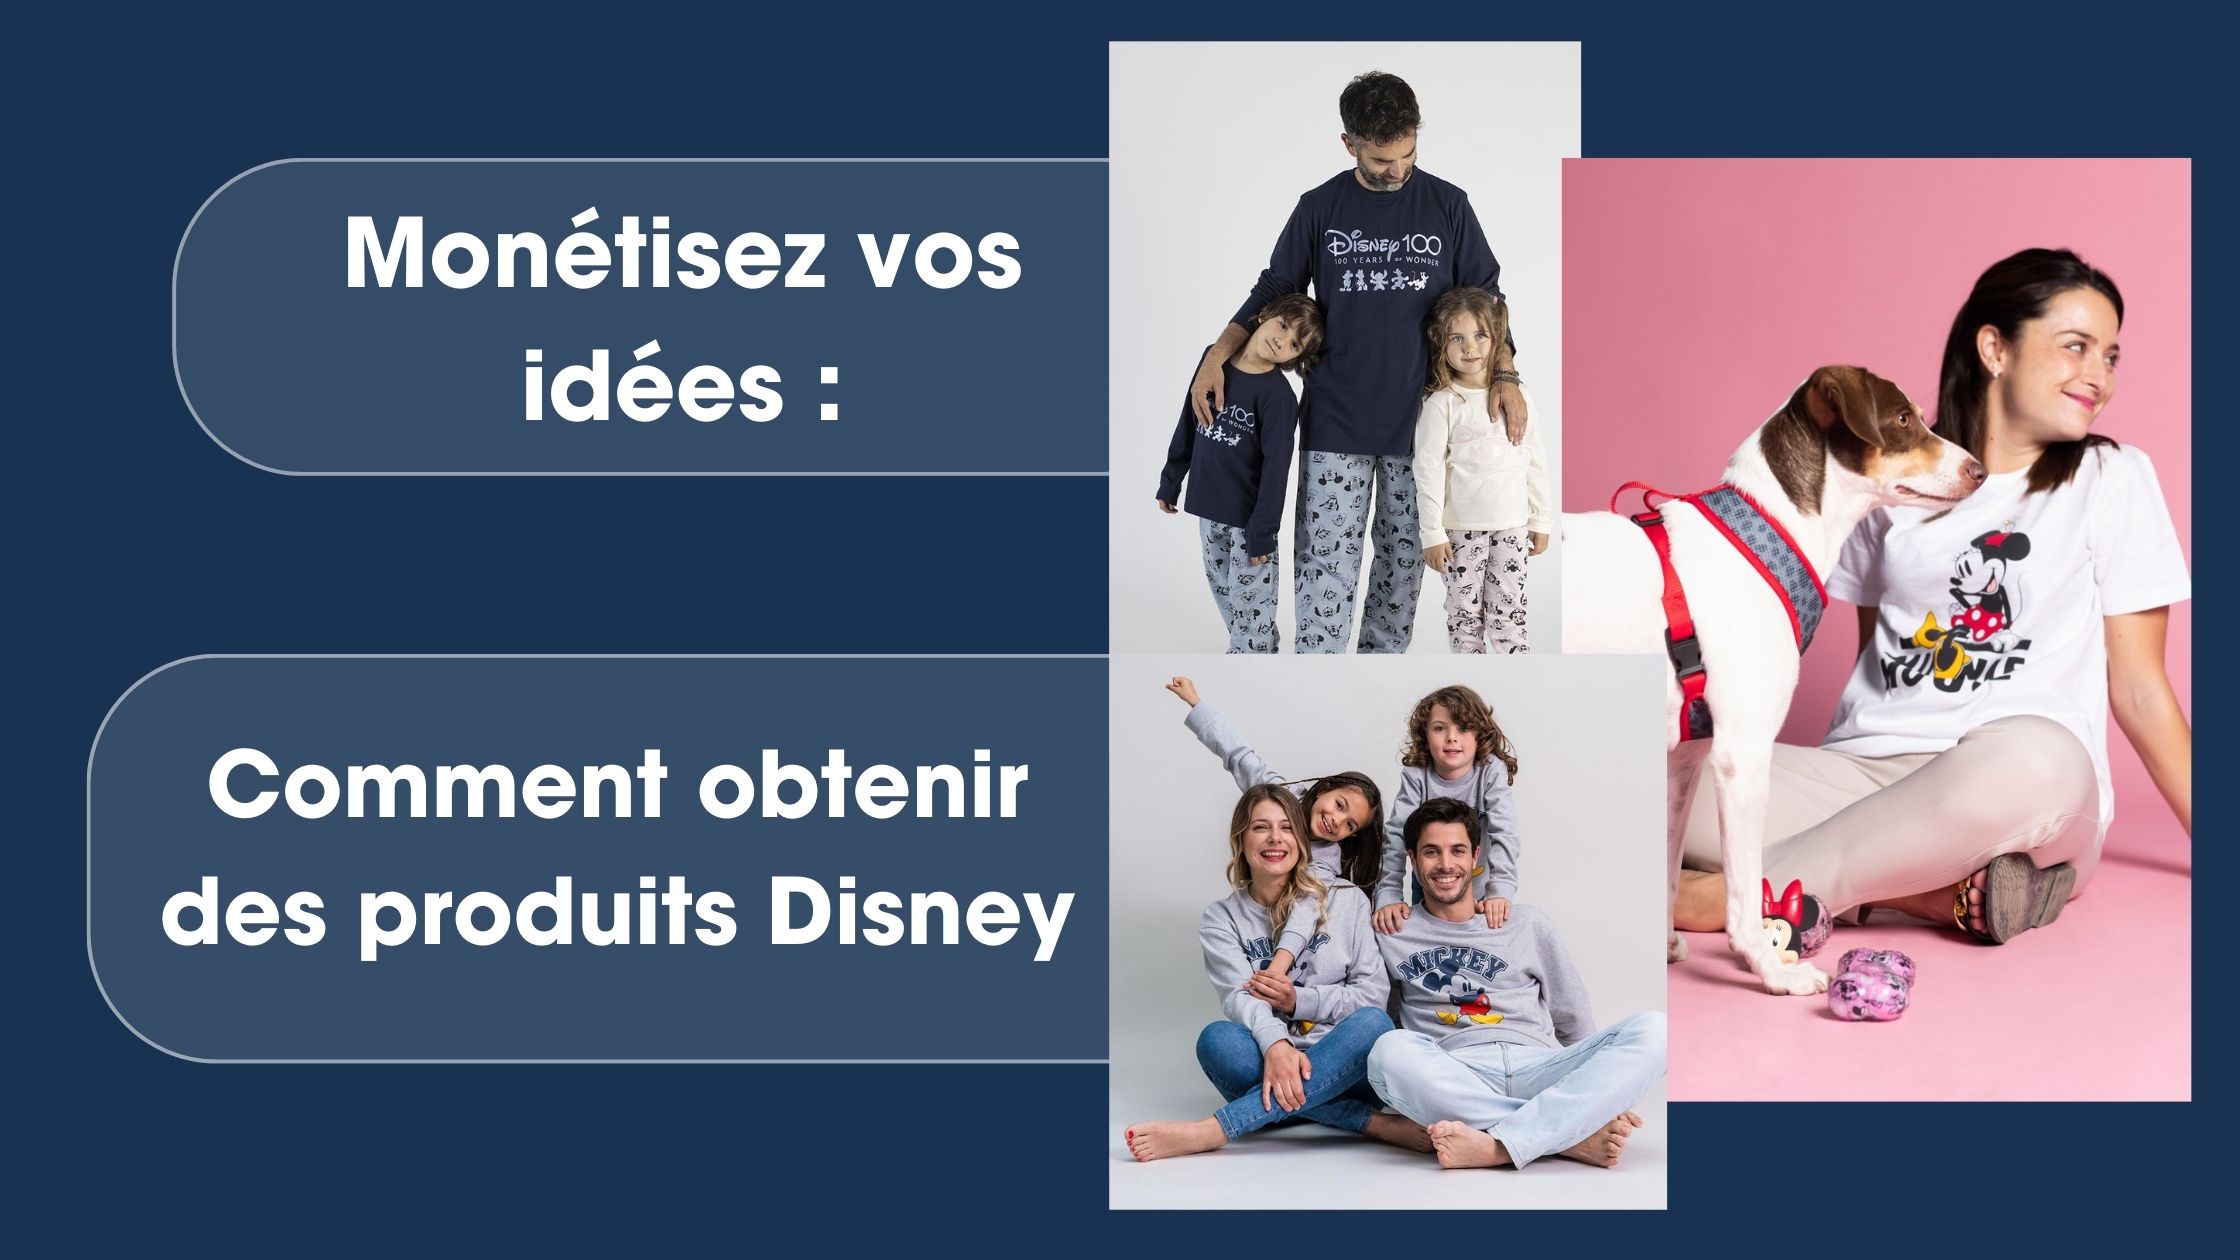 Monétisez vos idées : Comment obtenir des produits Disney